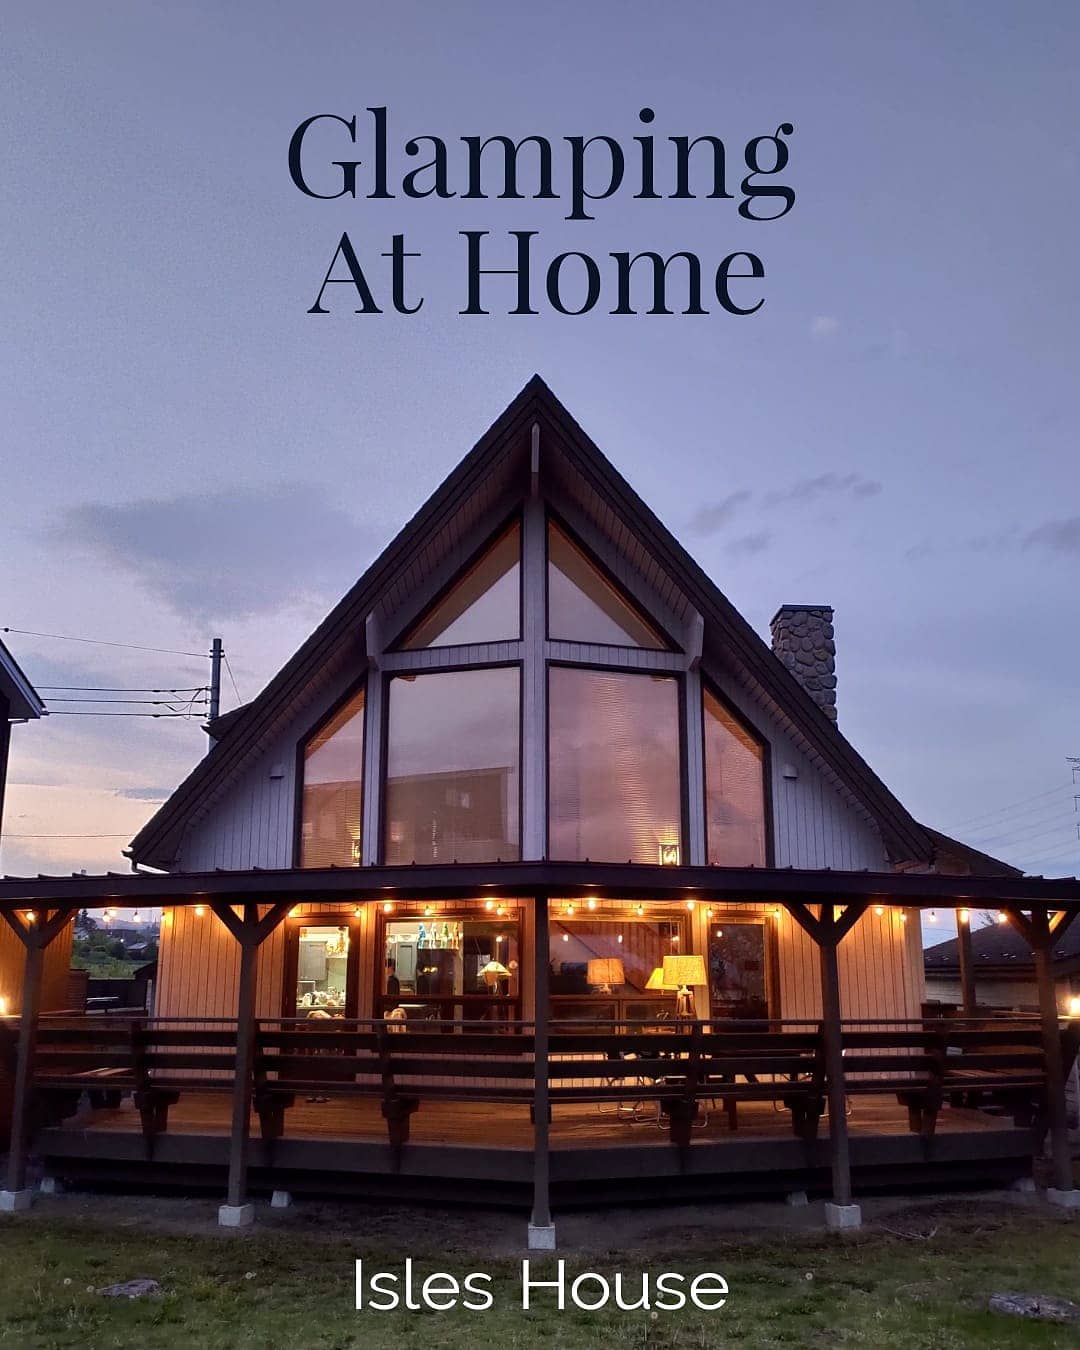 週末はマイホームでグランピングを。
アイルズハウスは「本物を知っている」お客様に満足してもらえる家を作っています。
#アイルズハウス施工例
#グランピング
#glamping